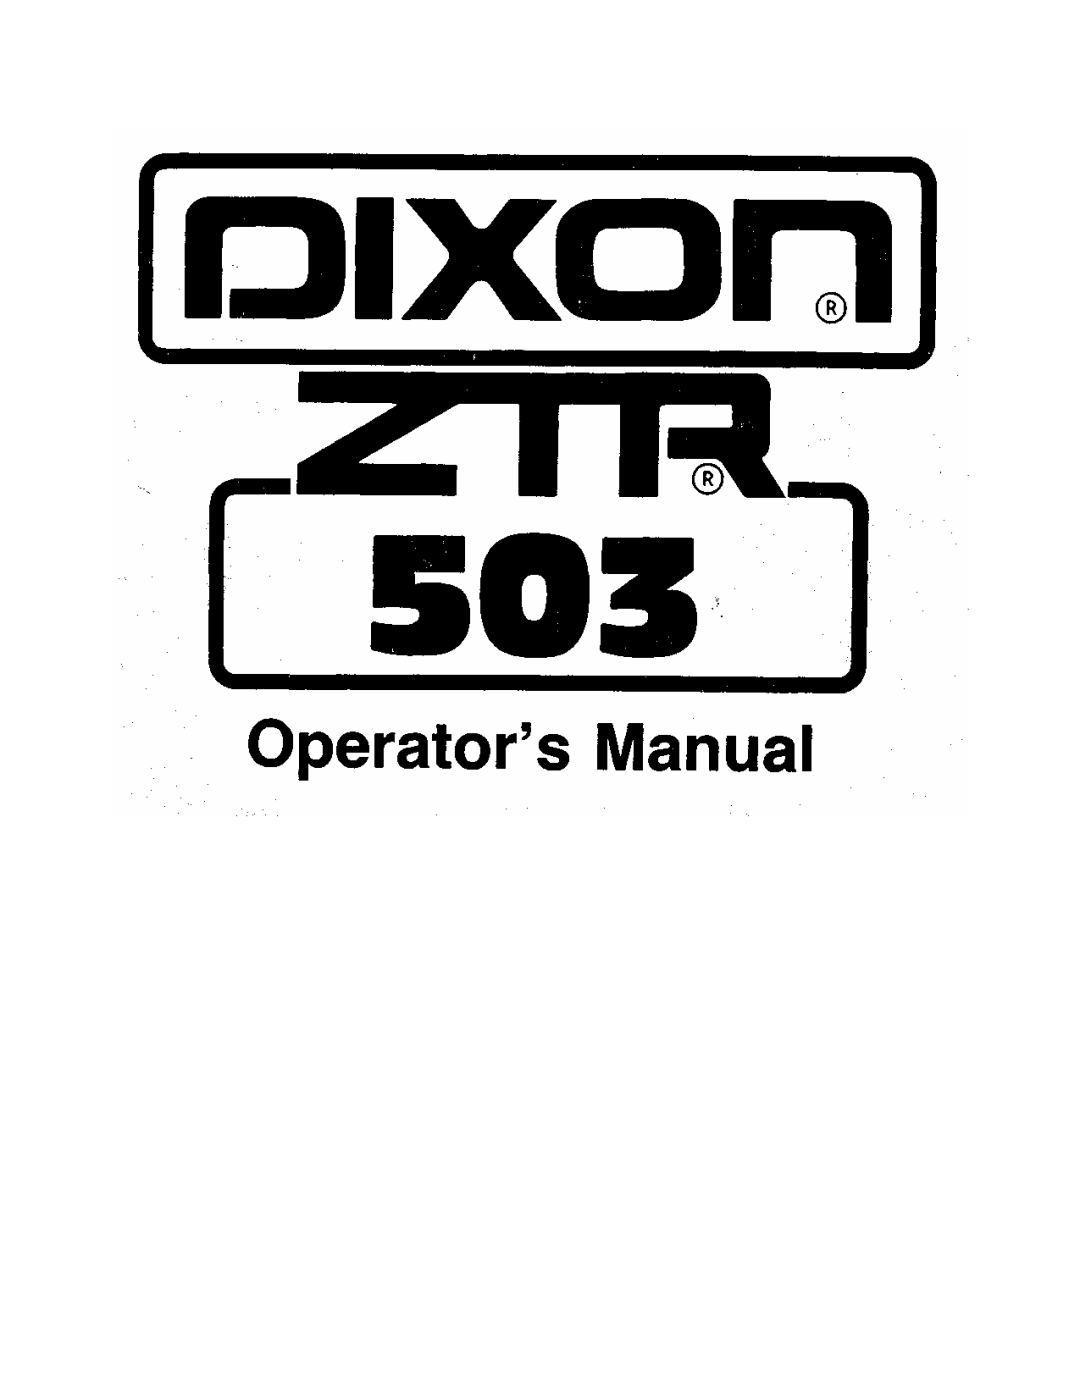 Dixon 503 manual 